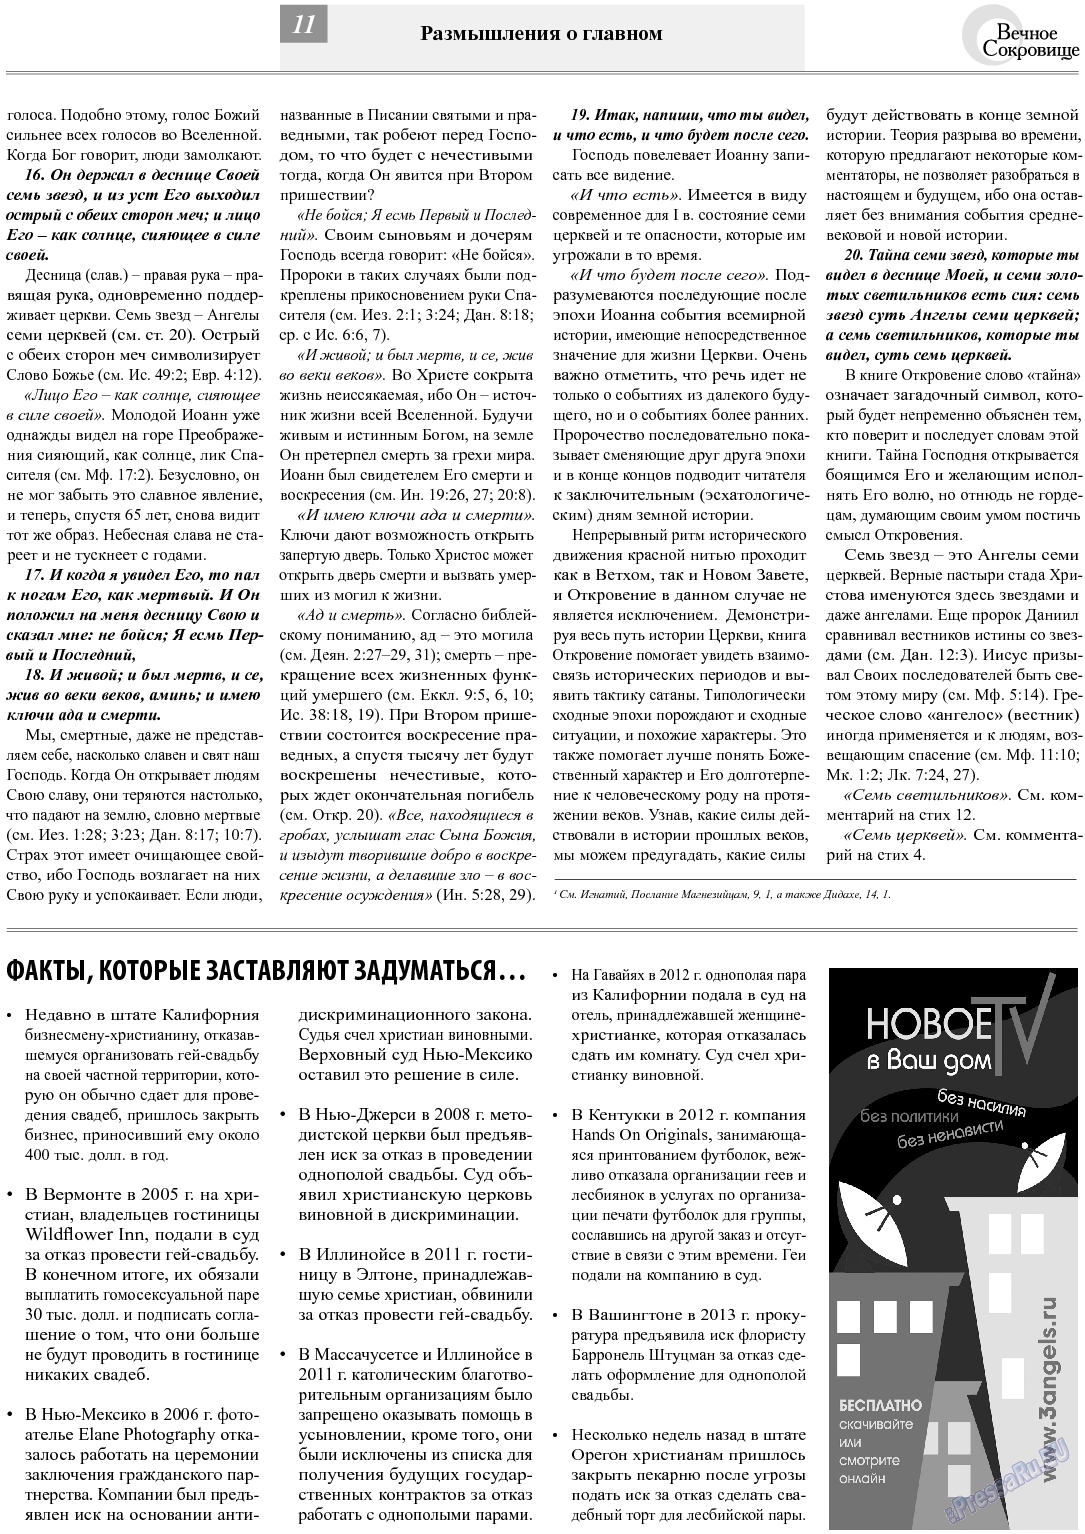 Вечное сокровище (газета). 2013 год, номер 6, стр. 11